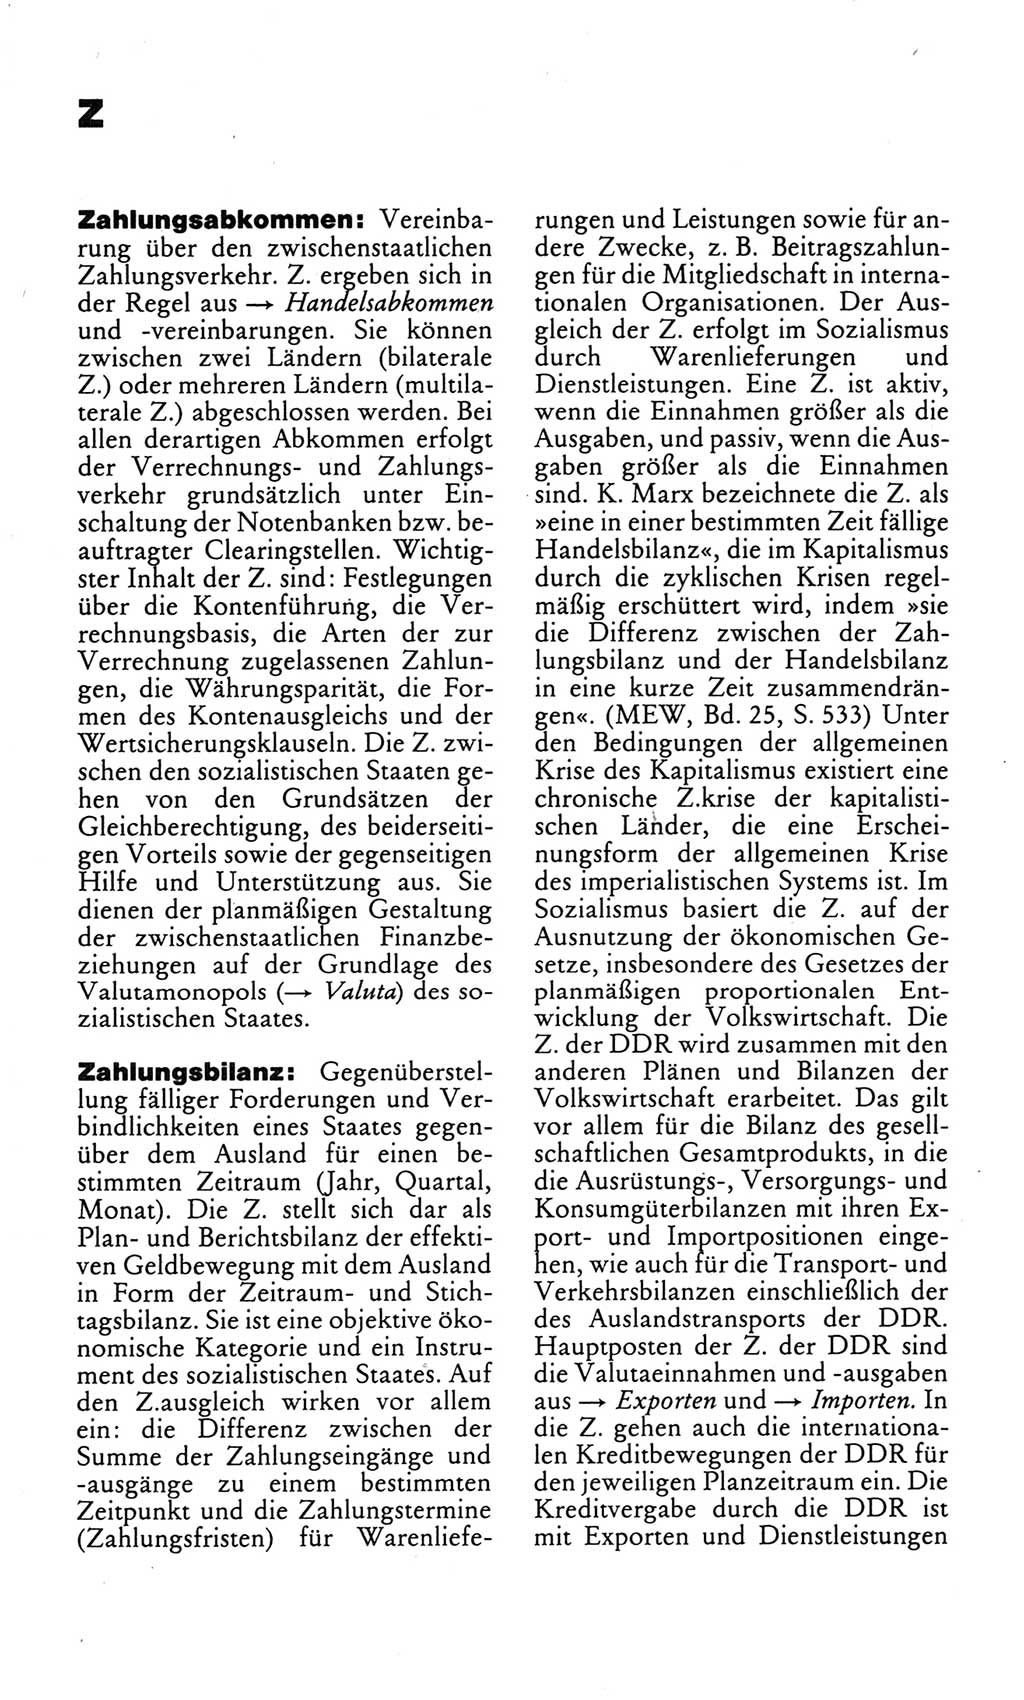 Kleines politisches Wörterbuch [Deutsche Demokratische Republik (DDR)] 1983, Seite 1090 (Kl. pol. Wb. DDR 1983, S. 1090)